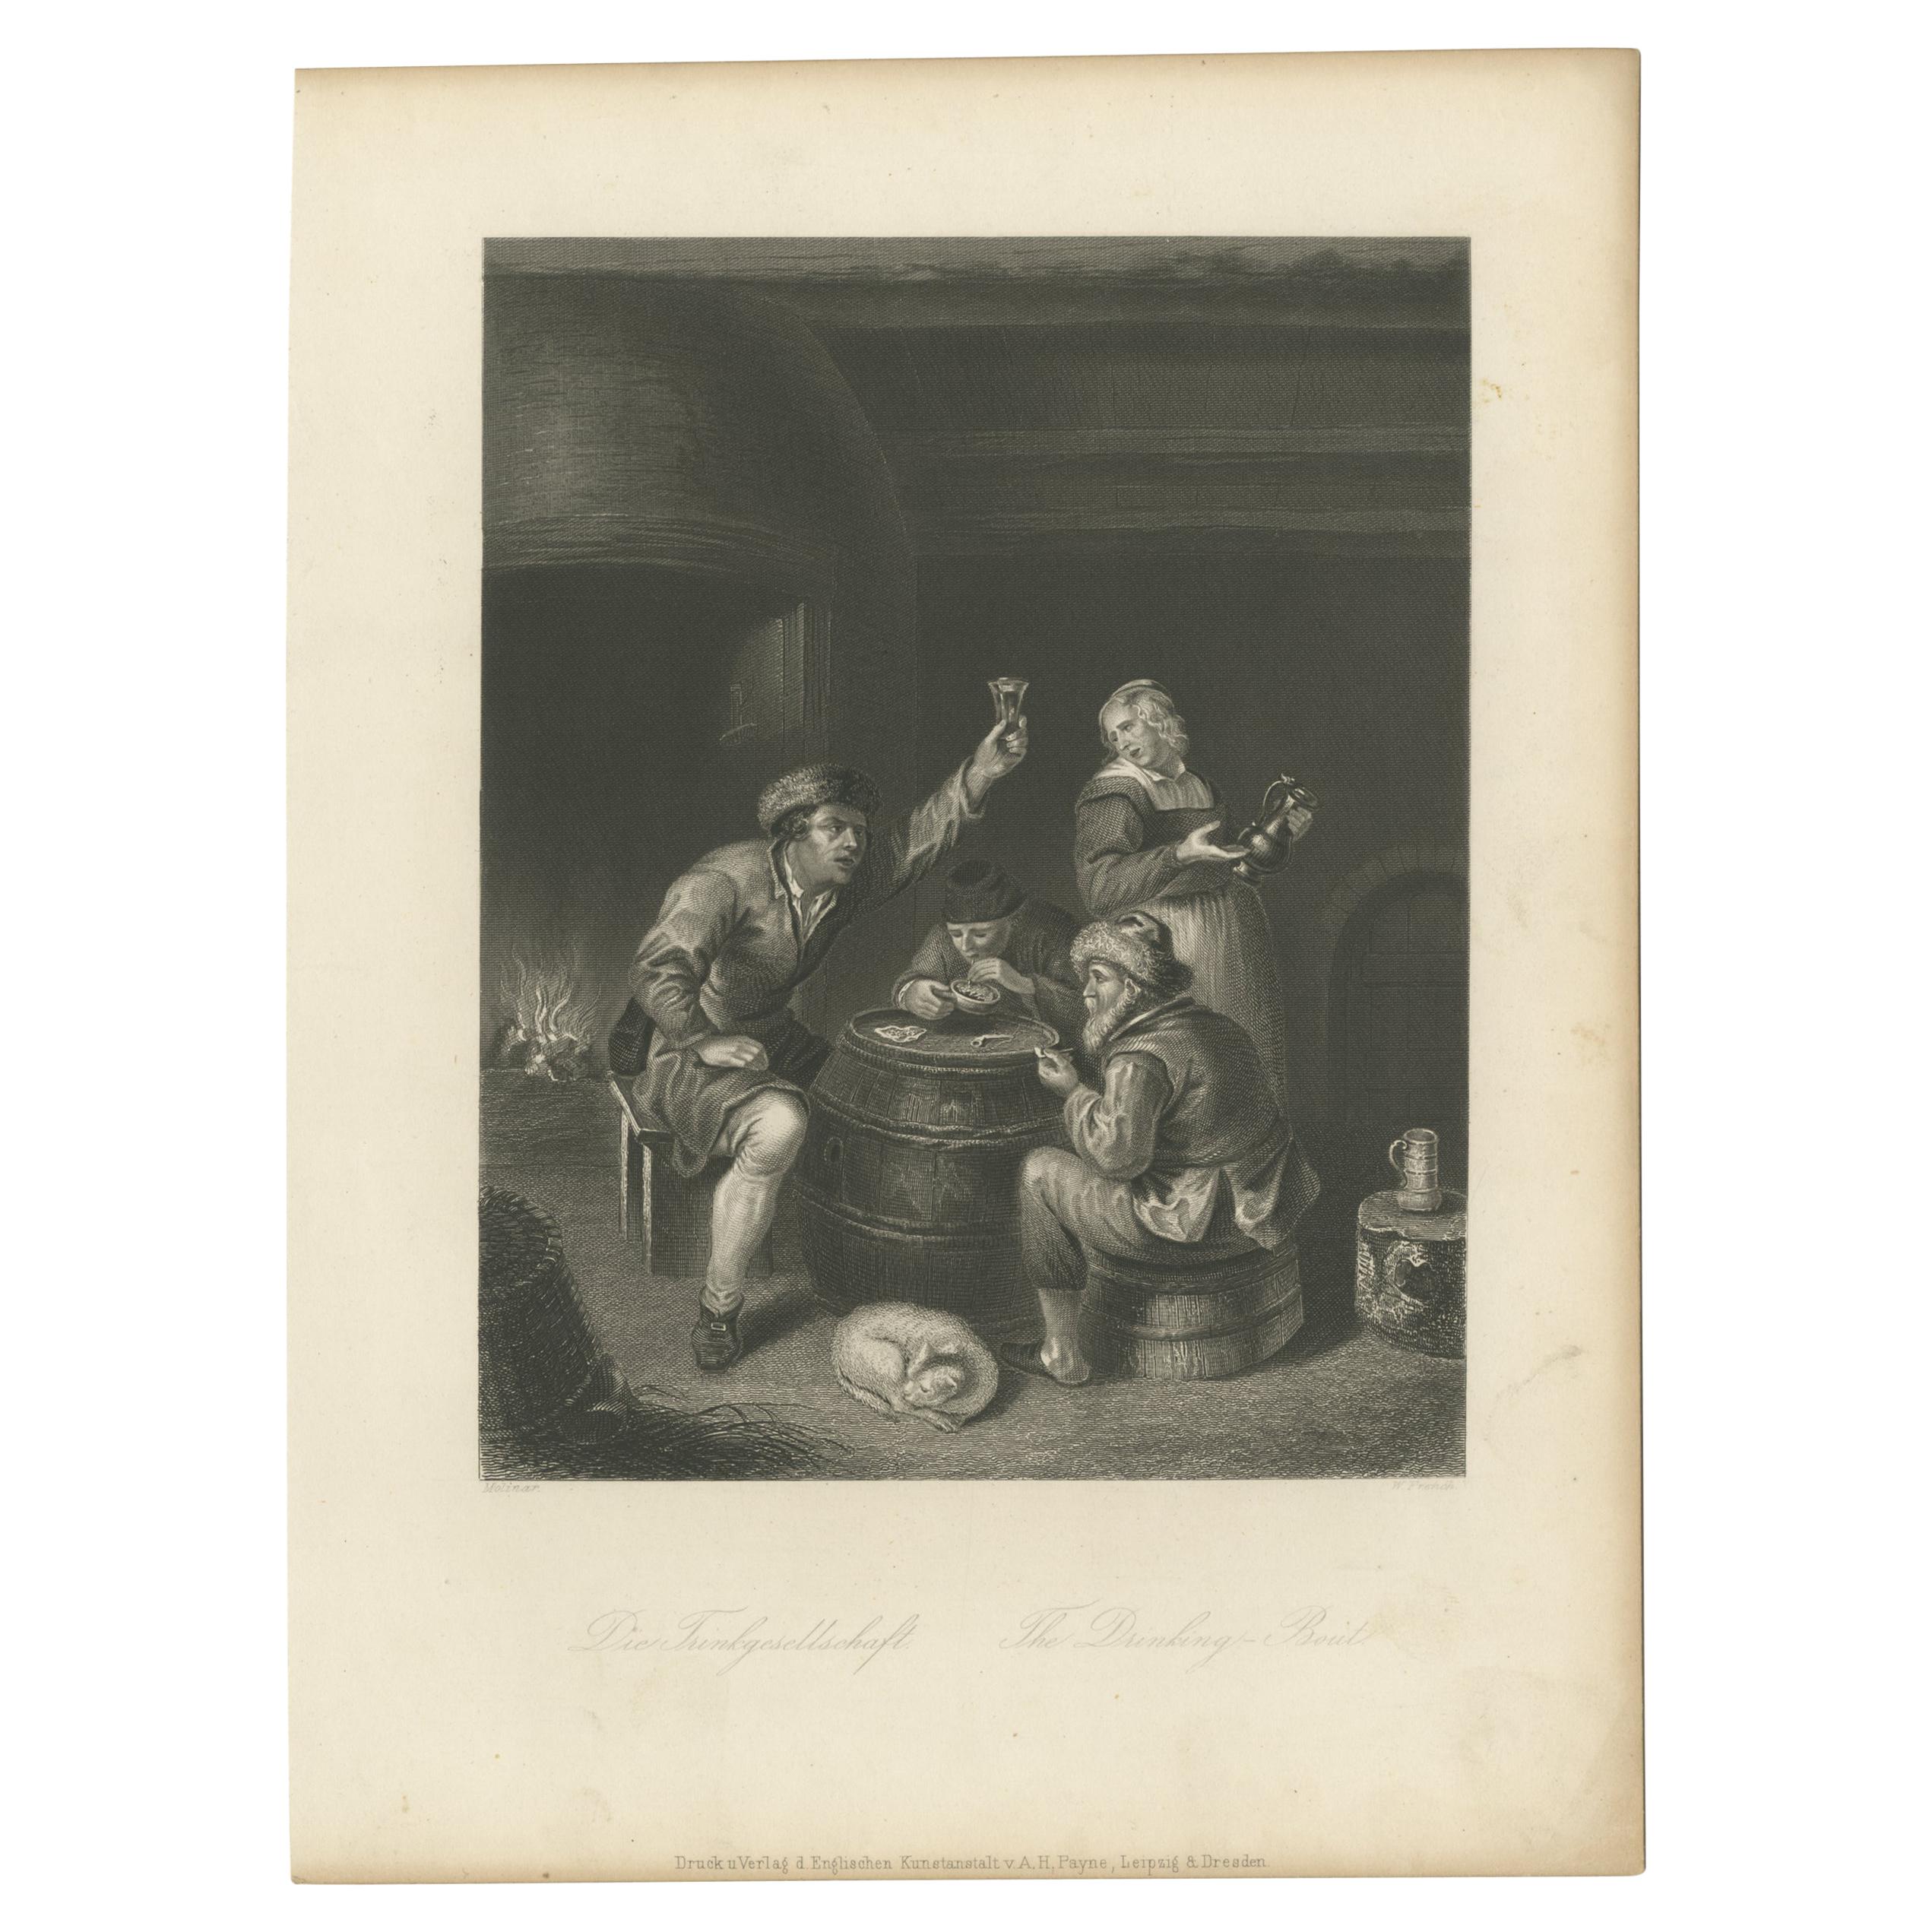 Impression ancienne d'un groupe de personnes buvant par Payne, vers 1850